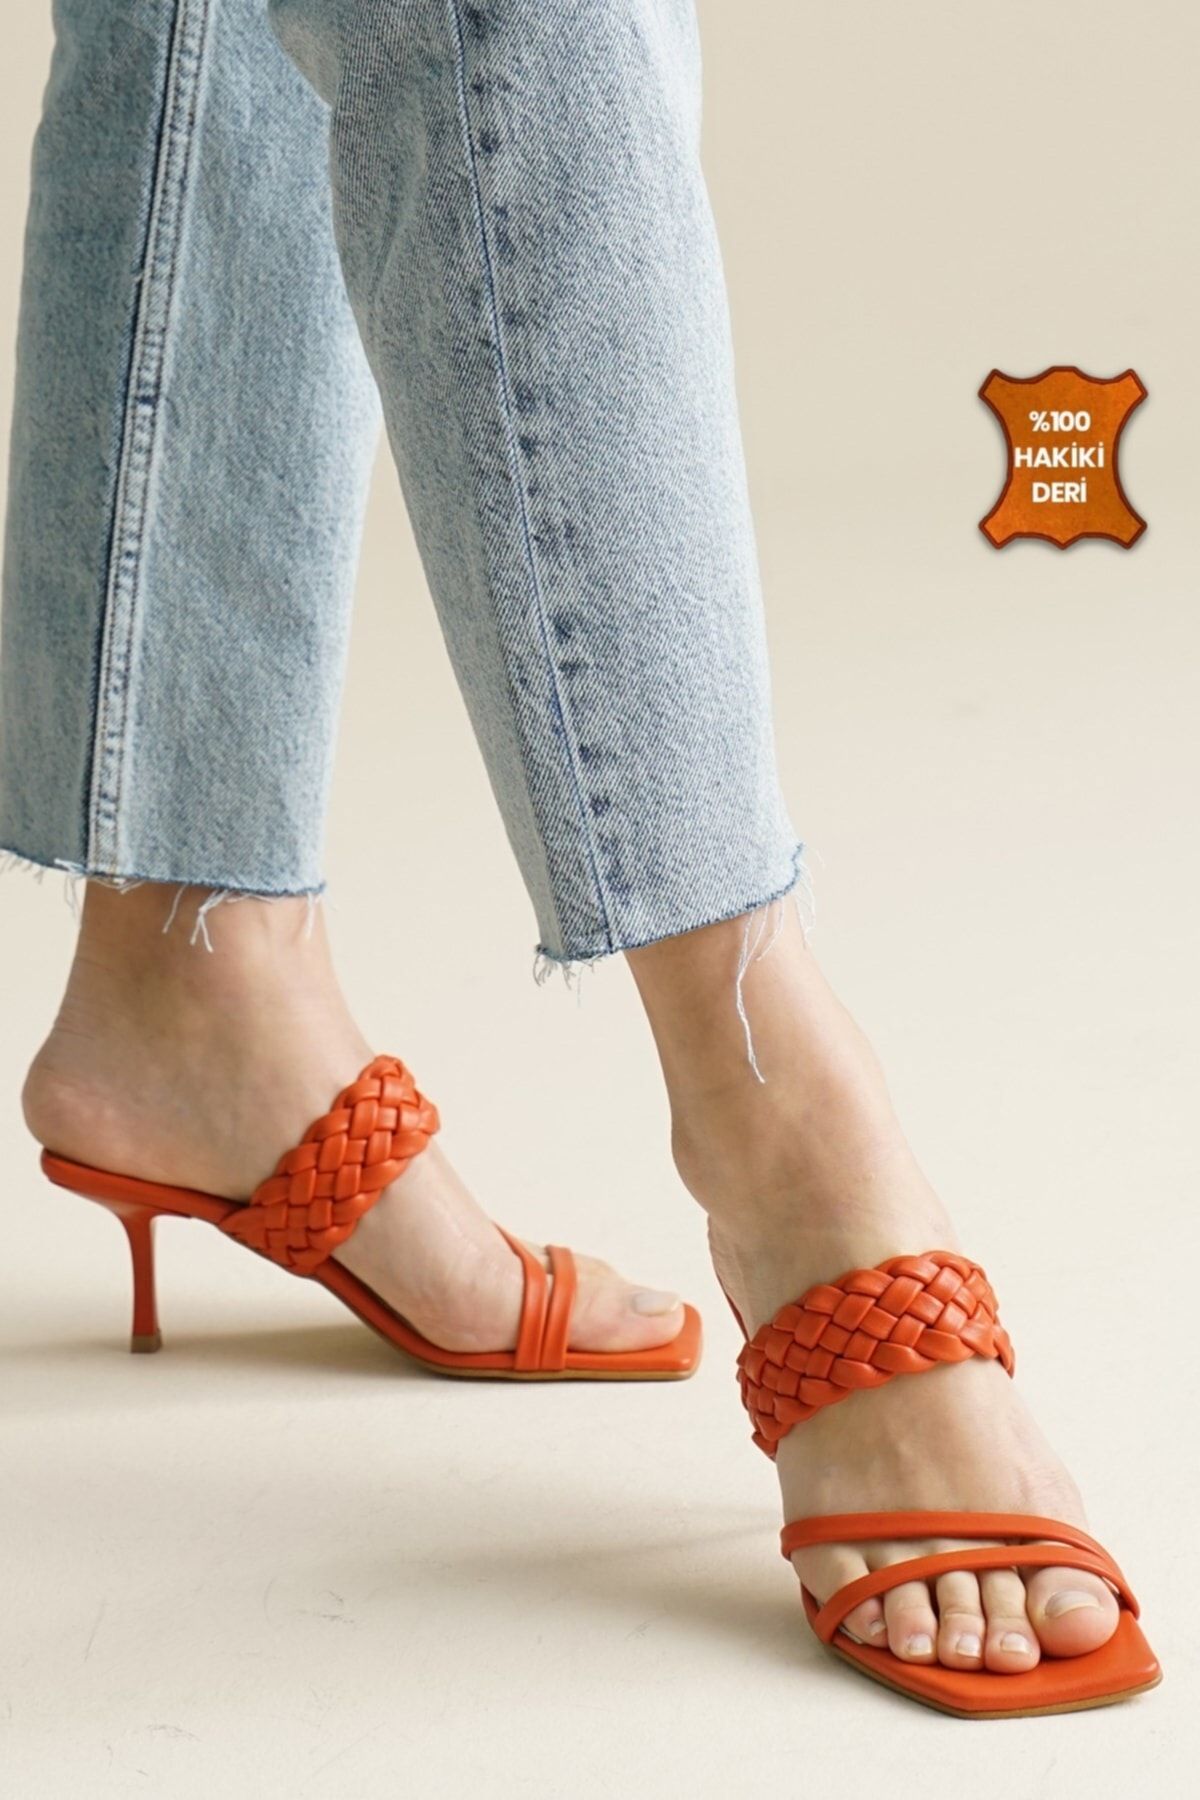 Mio Gusto Petra Hakiki Deri Turuncu Renk Kadın Terlik Topuklu Ayakkabı